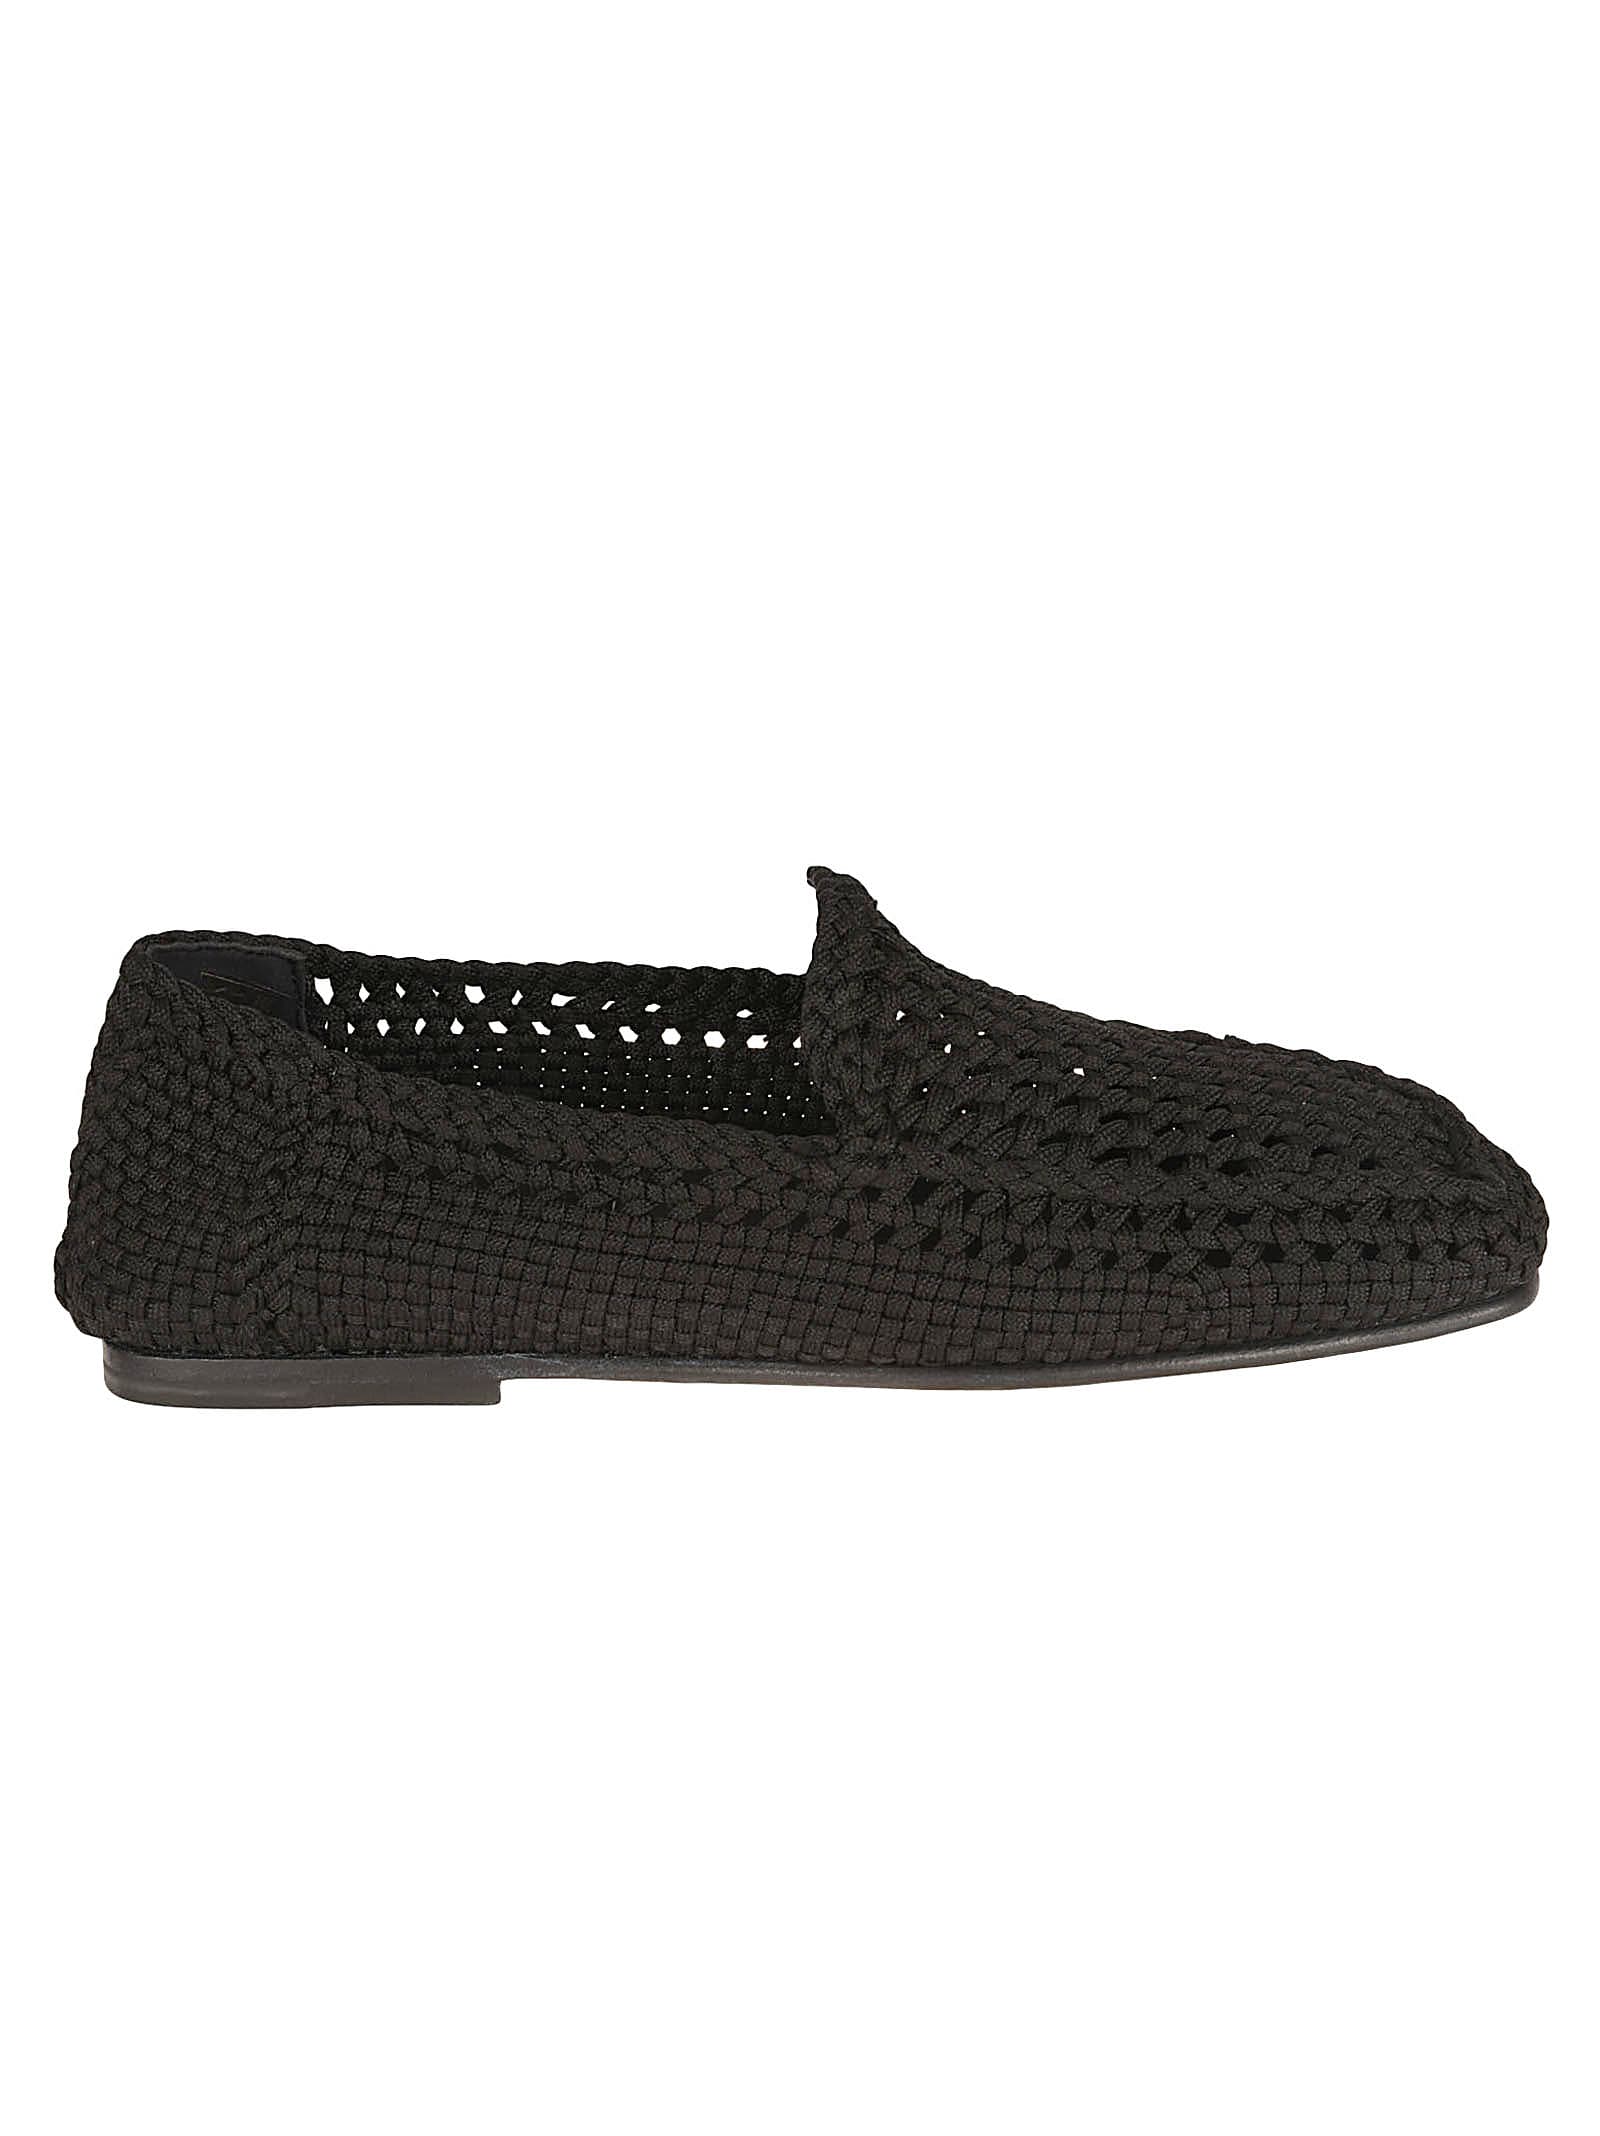 Dolce & Gabbana Crochet Loafers In Black